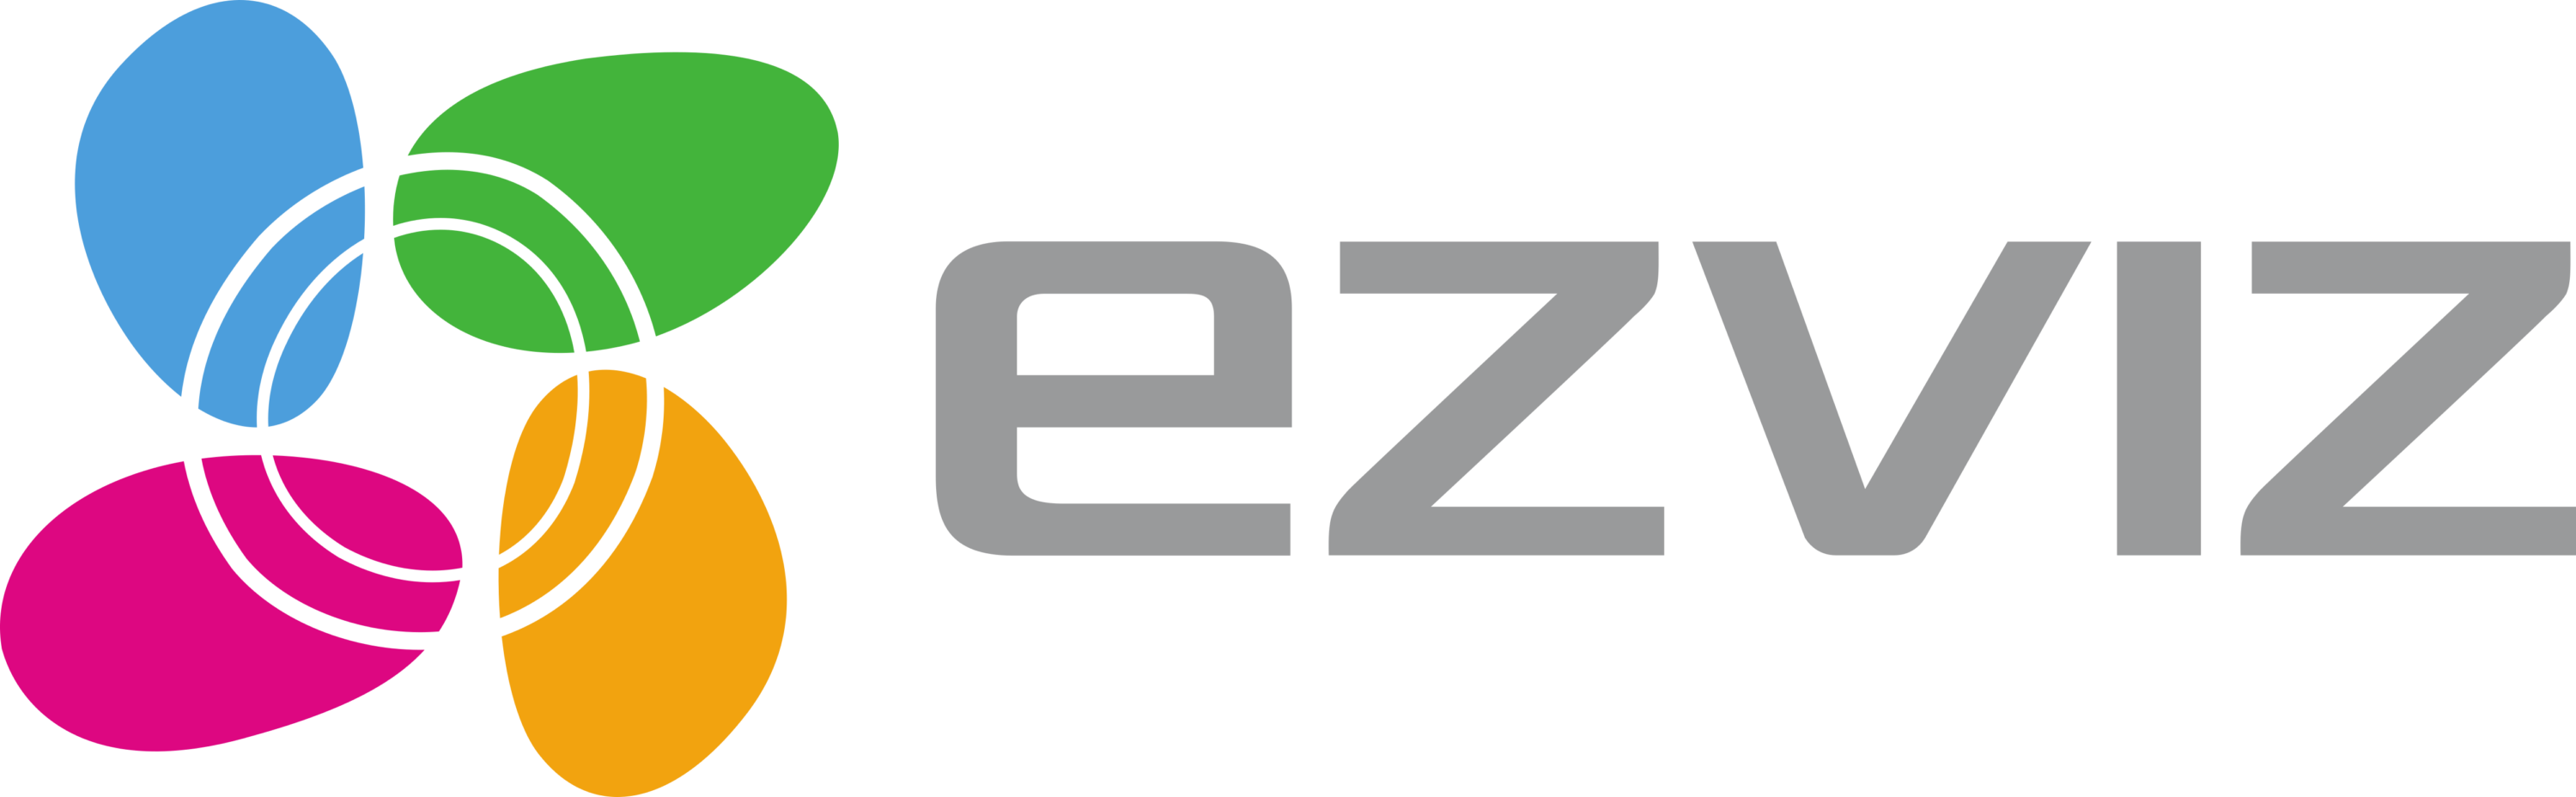 Ezviz Logo